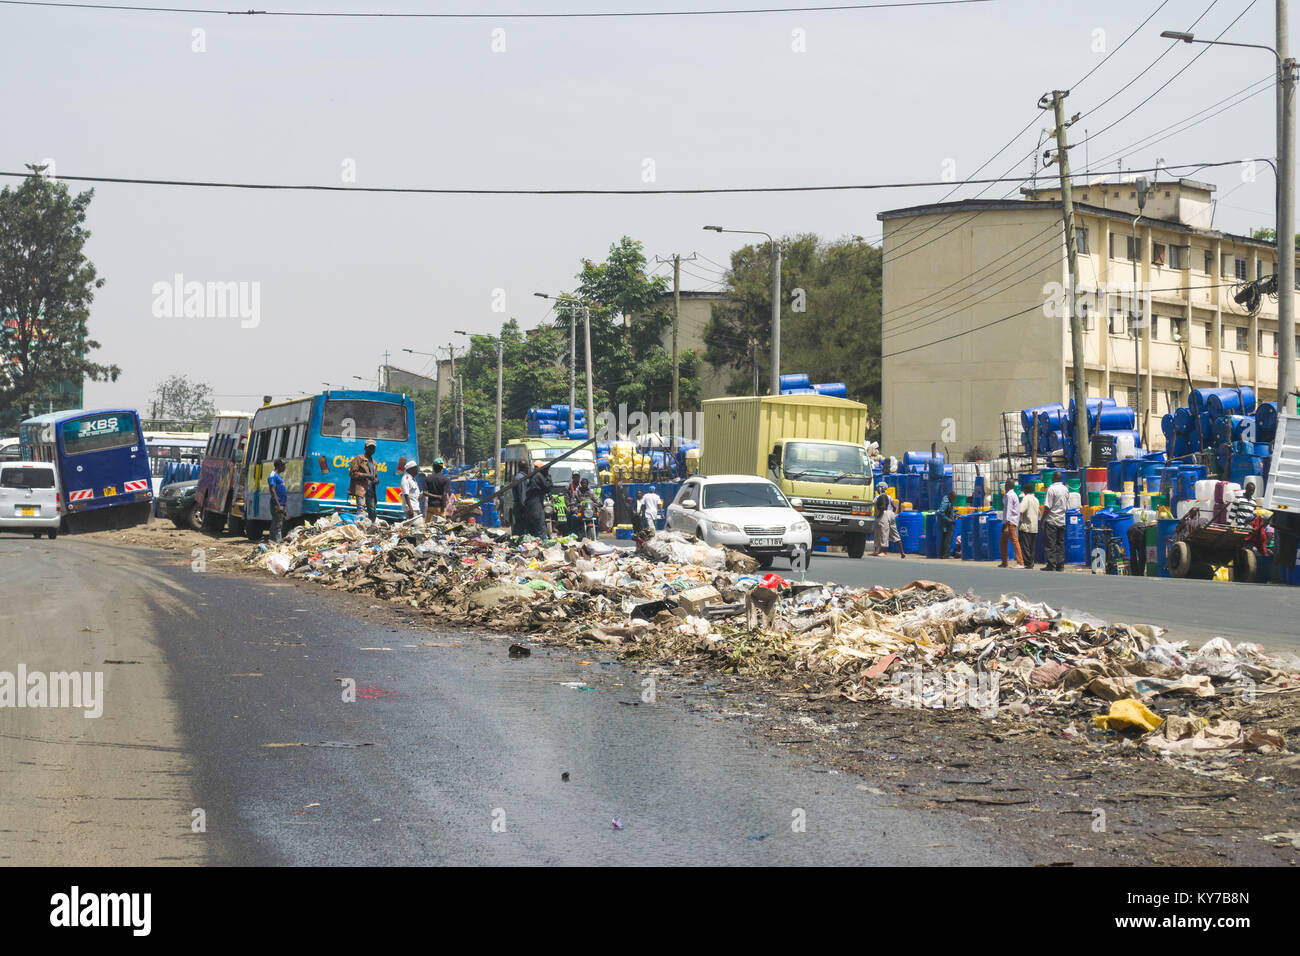 Einen großen Haufen von plastik Müll und anderen Abfällen sitzt in der Mitte der Straße als Menschen und Fahrzeuge Vergangenheit gehen, Nairobi, Kenia, Ostafrika Stockfoto